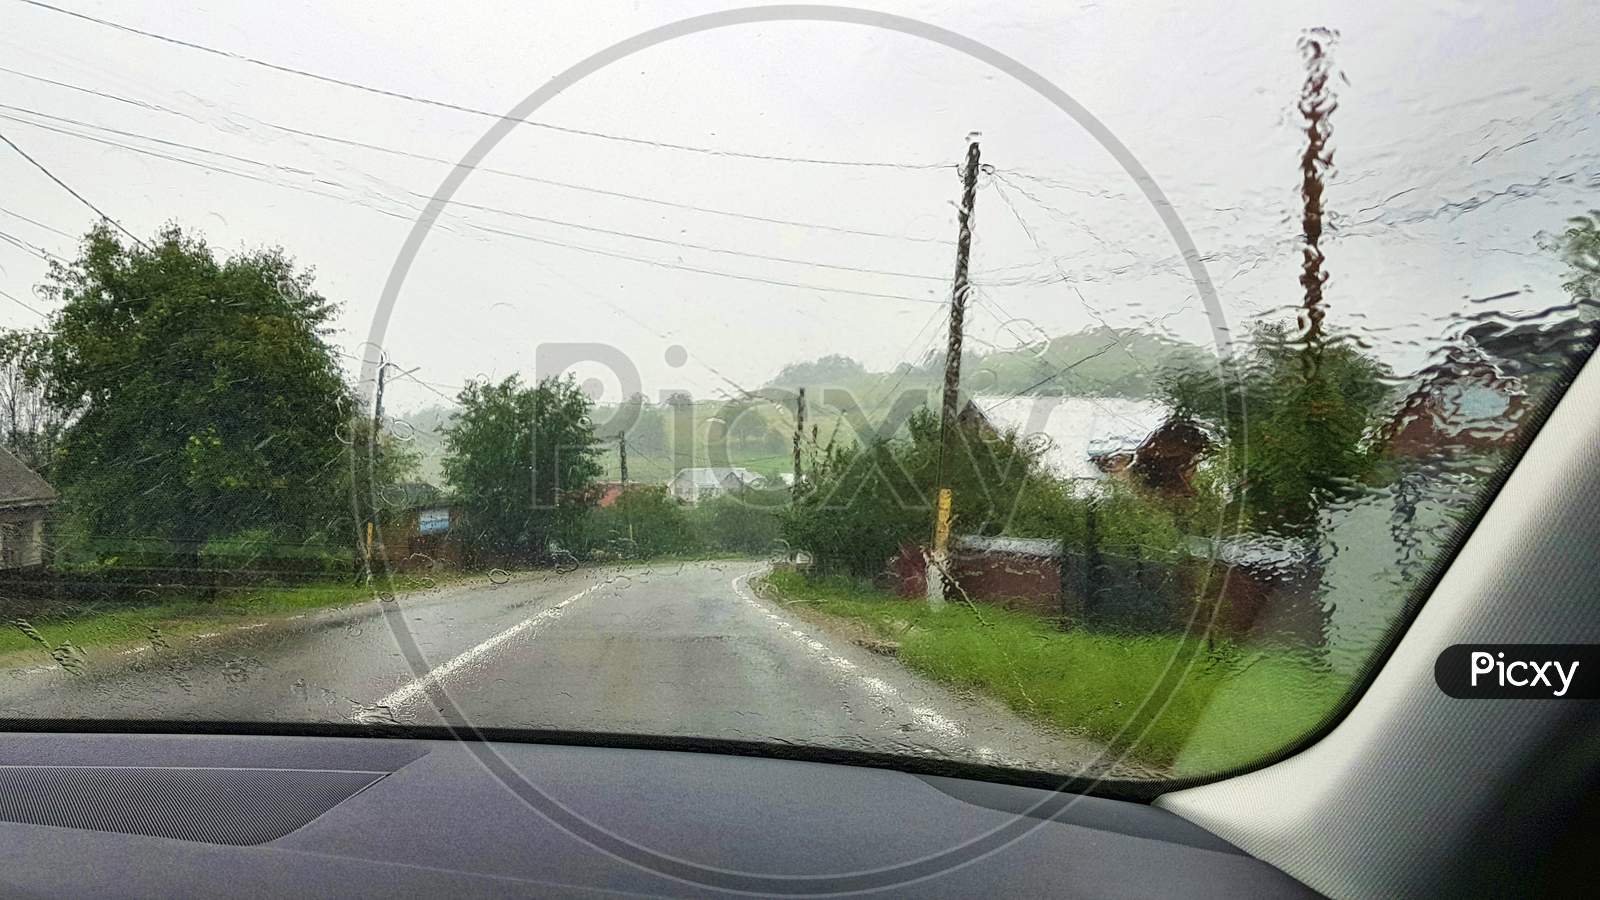 Road View In Heavy Rain